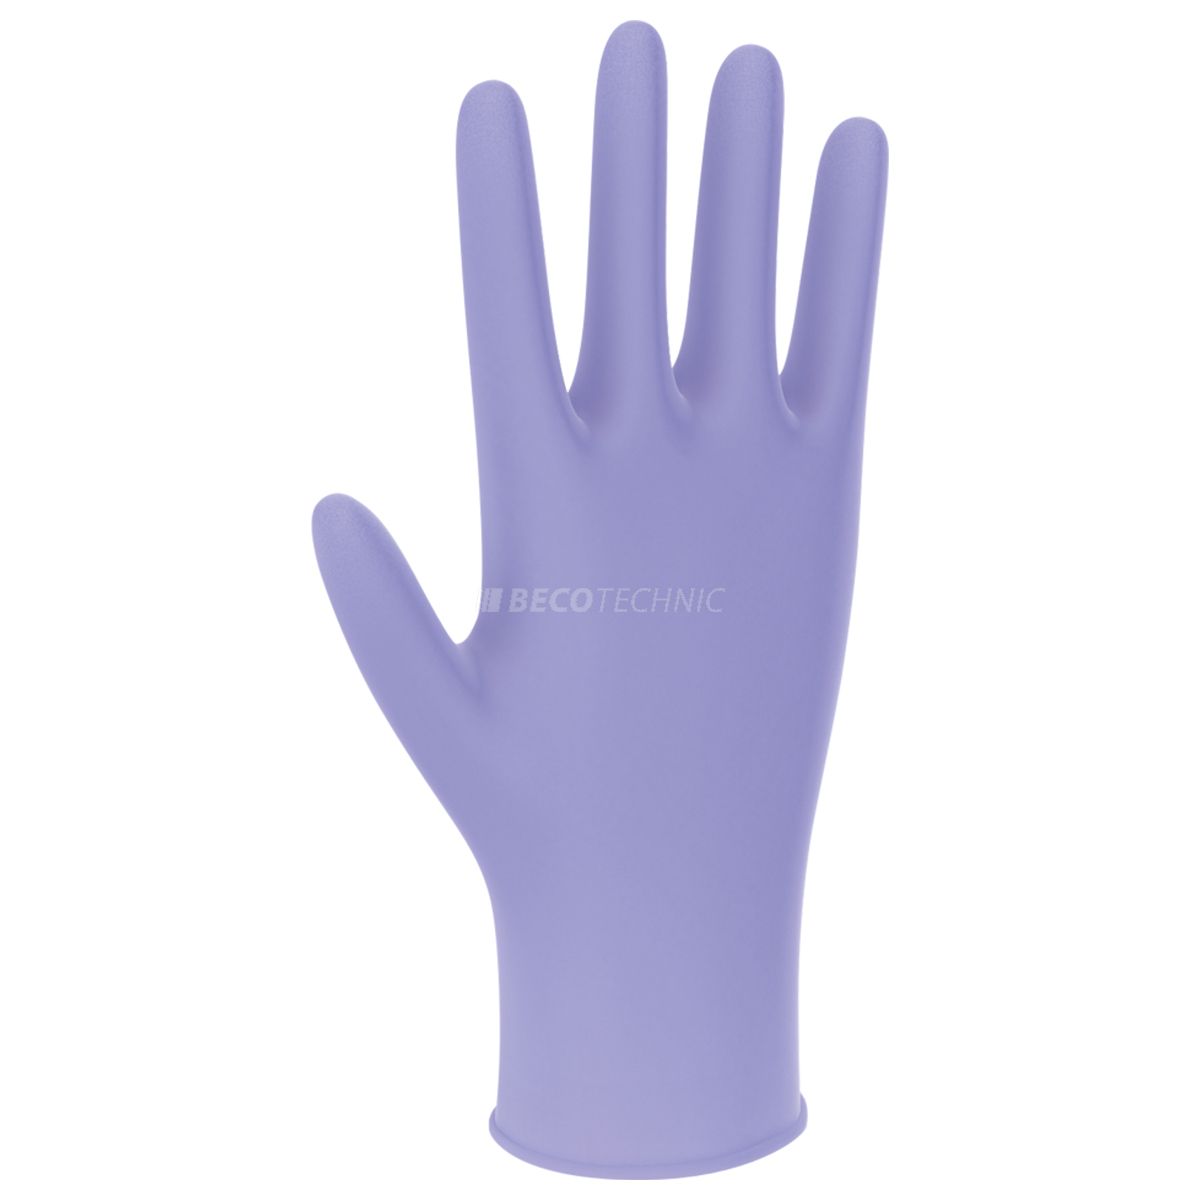 Einmal-Handschuhe, Nitril, Gr. M / 7 - 8, violett, latexfrei, puderfrei, unsteril, 100 Stk